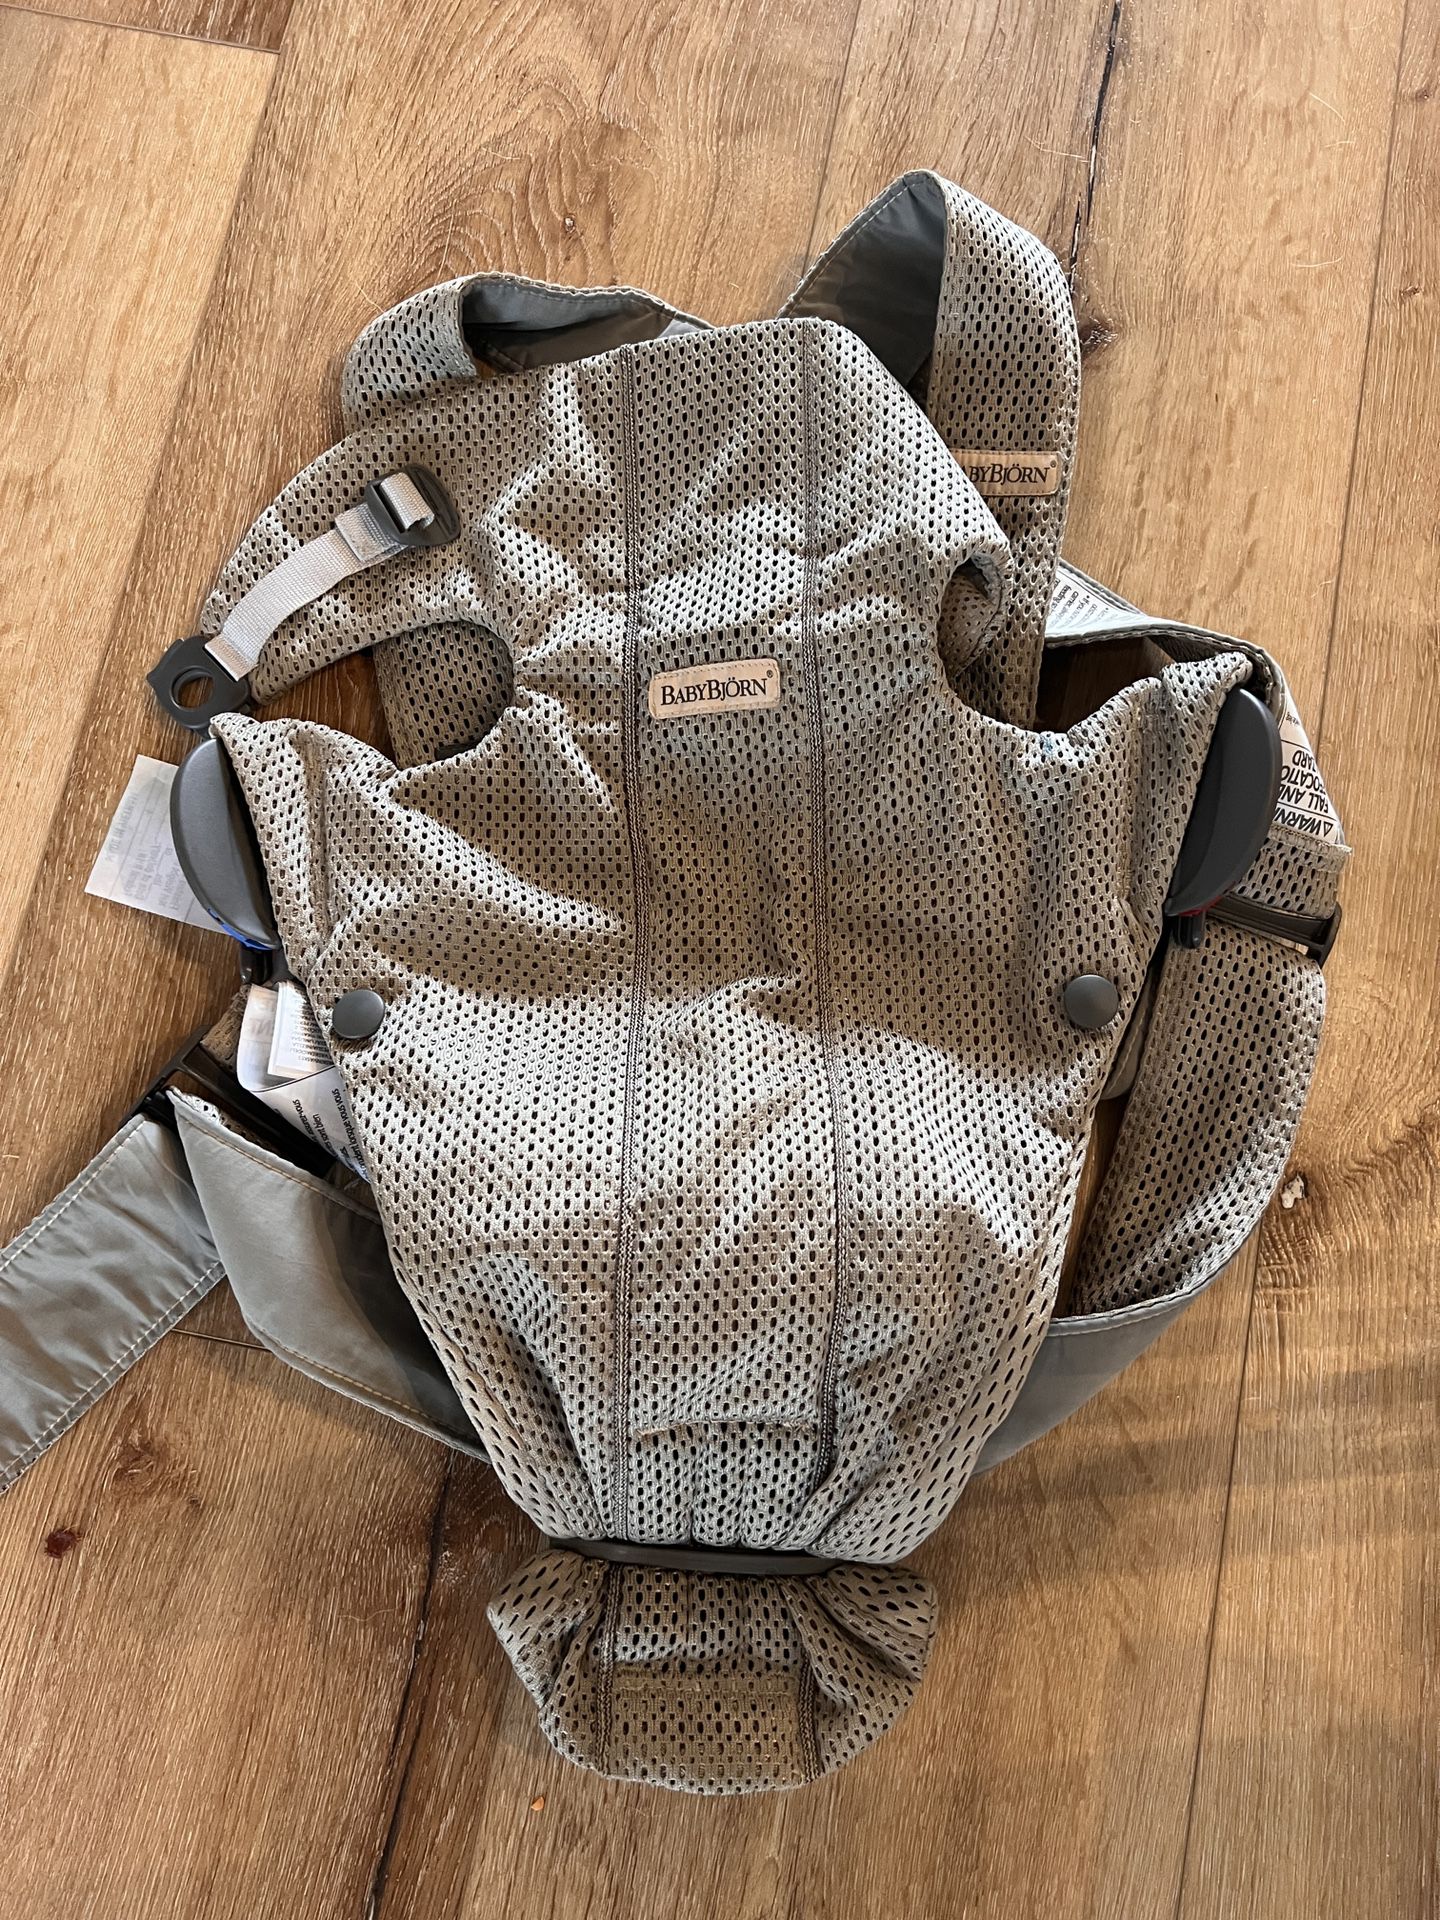 Baby Bjorn Infant Carrier in gray beige 